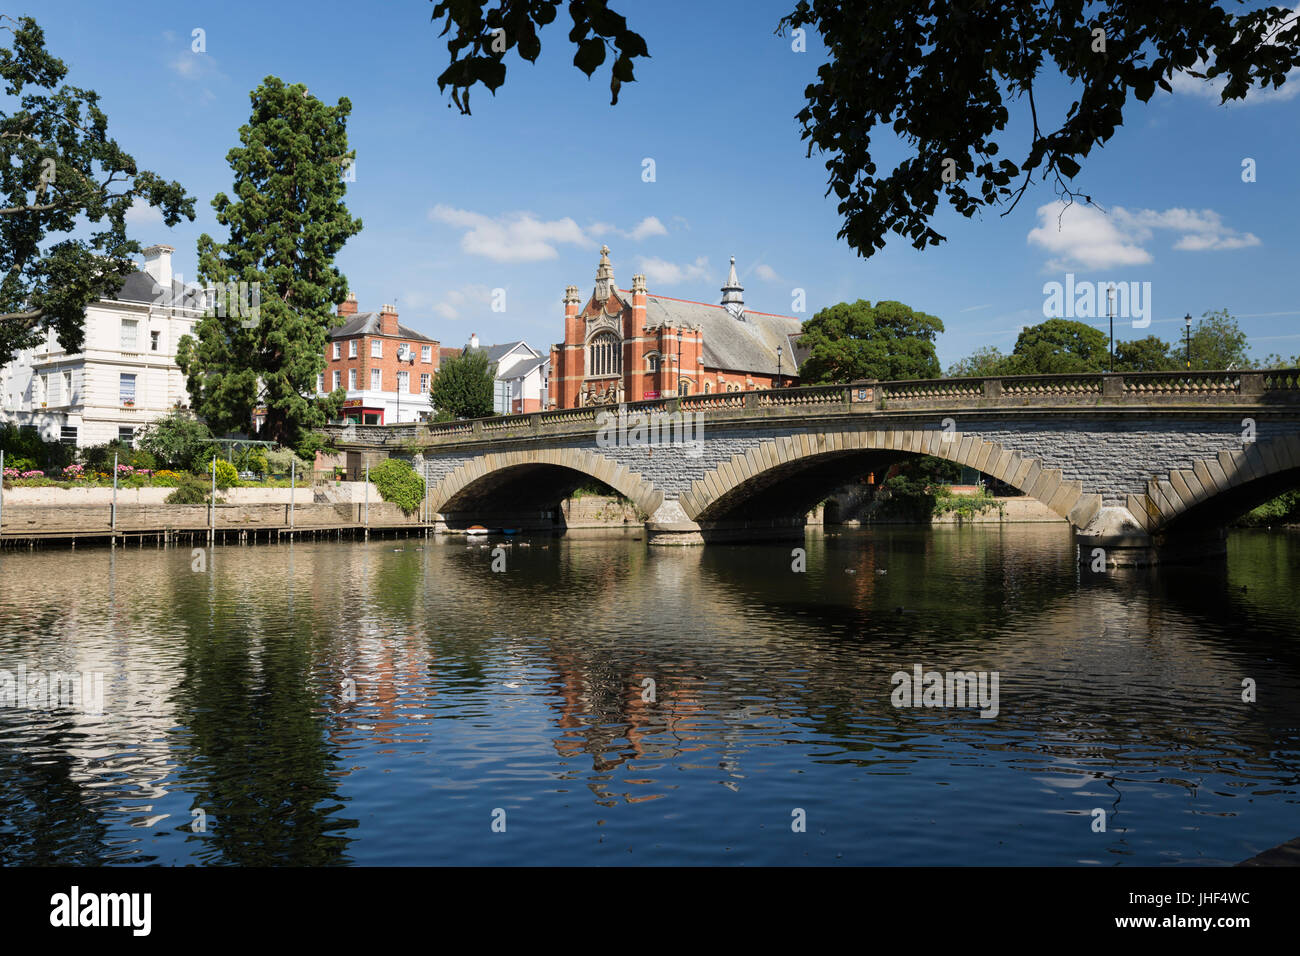 River Avon, Evesham, Worcestershire, England, United Kingdom, Europe Stock Photo